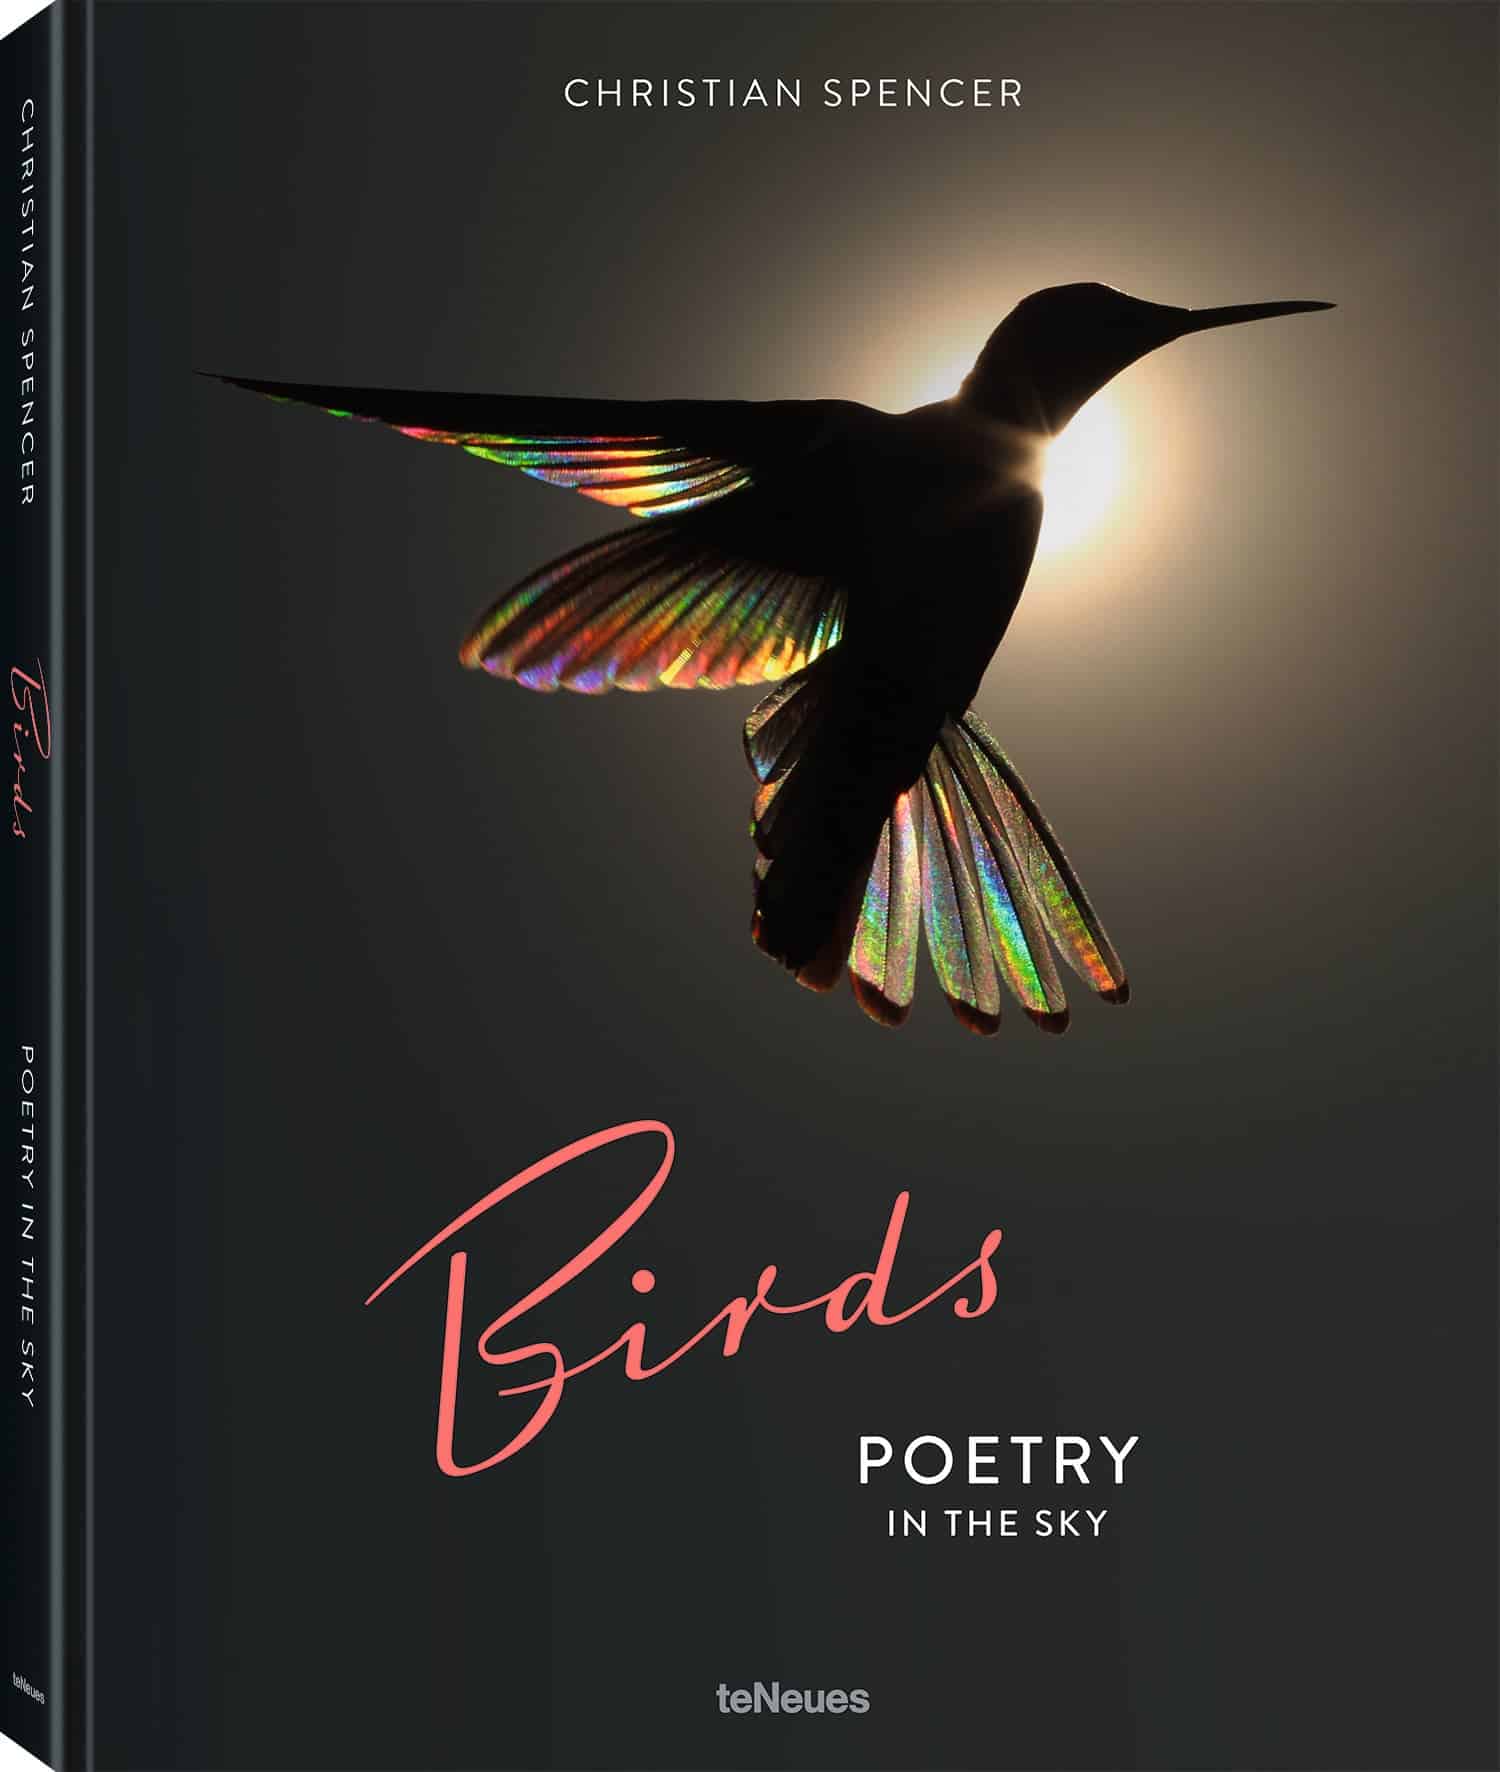 غلاف كتاب شعر في السماء يحتوي على صورة ظلية لطائر الطنان قزحي الألوان أمام خلفية سوداء.